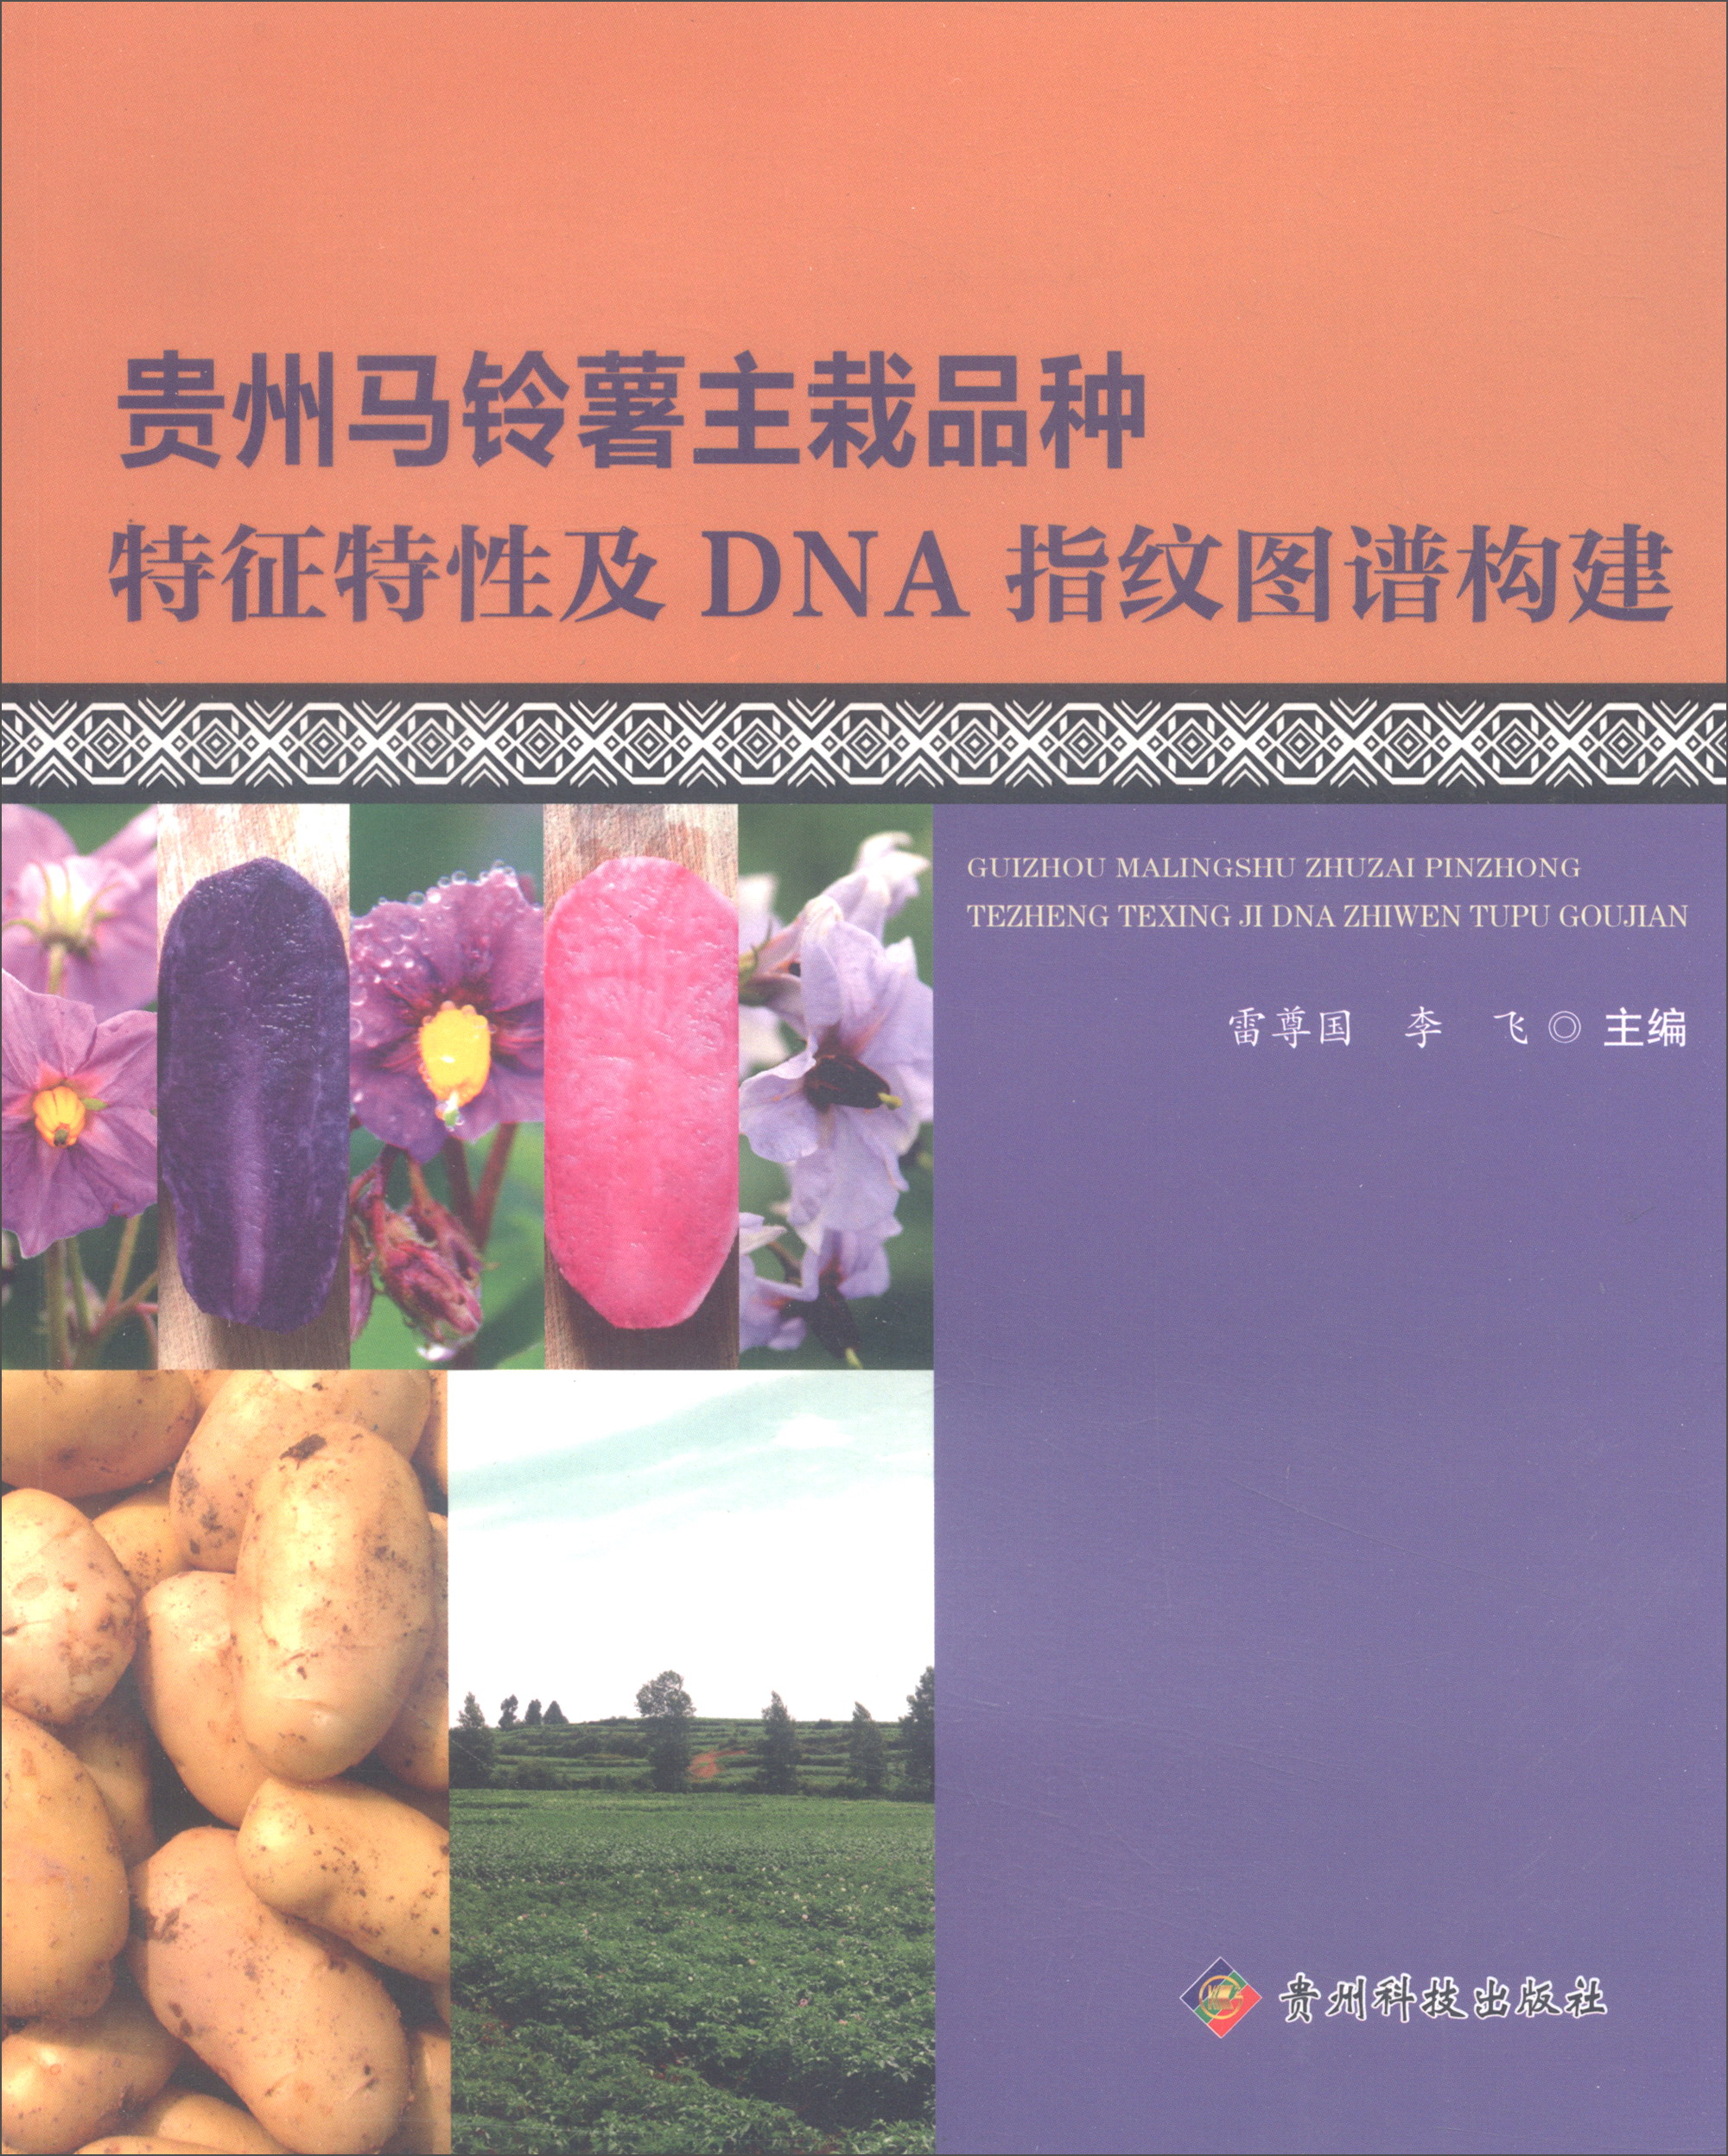 贵州马铃薯主栽品种特征特性及DNA指纹图谱构建